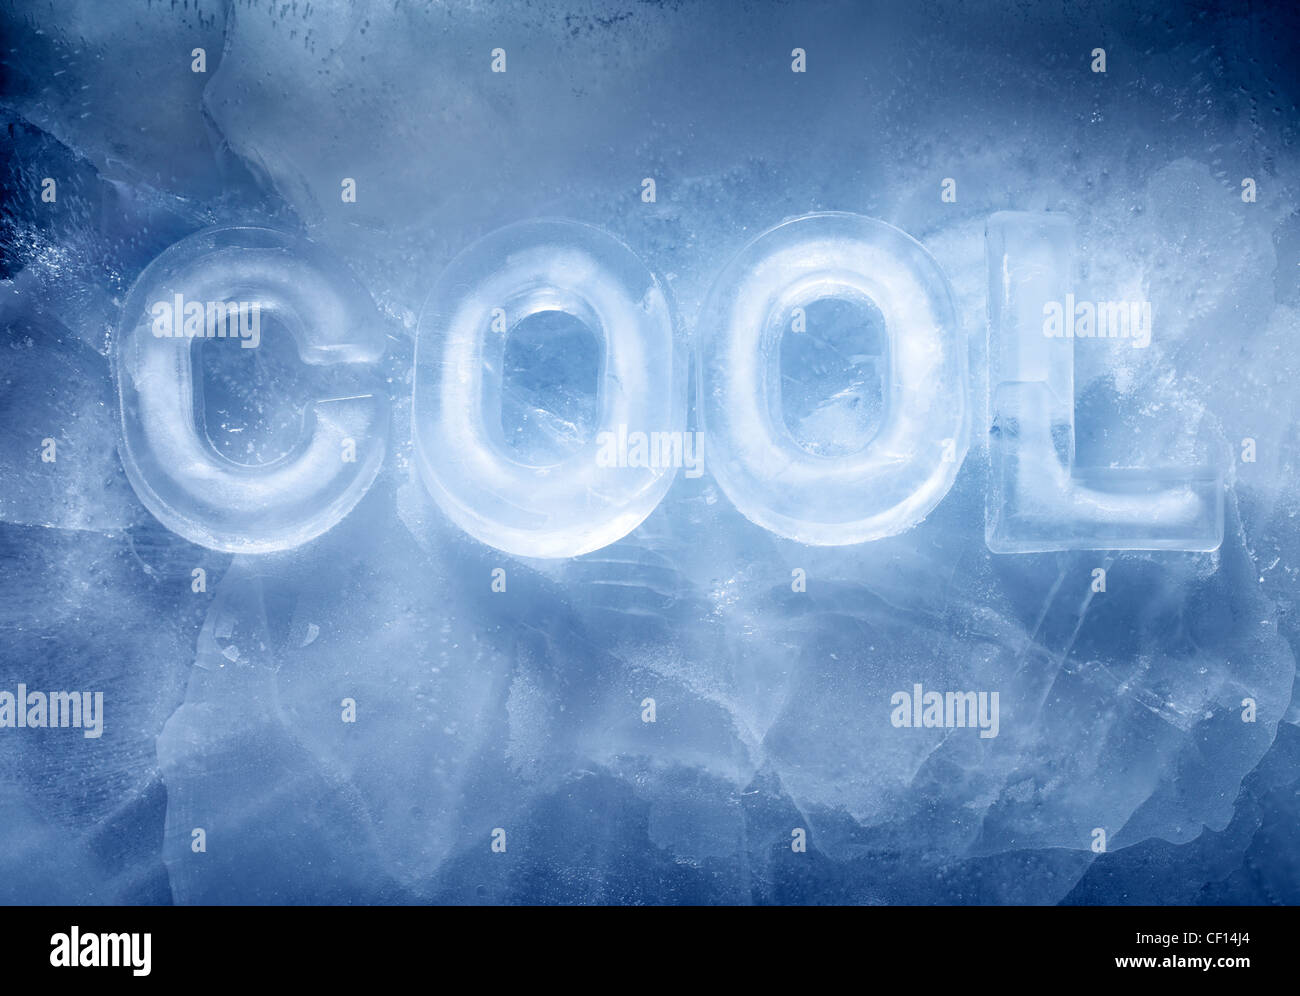 Wort COOL mit echtem Eisbuchstaben auf dem Eis gemacht. Stockfoto